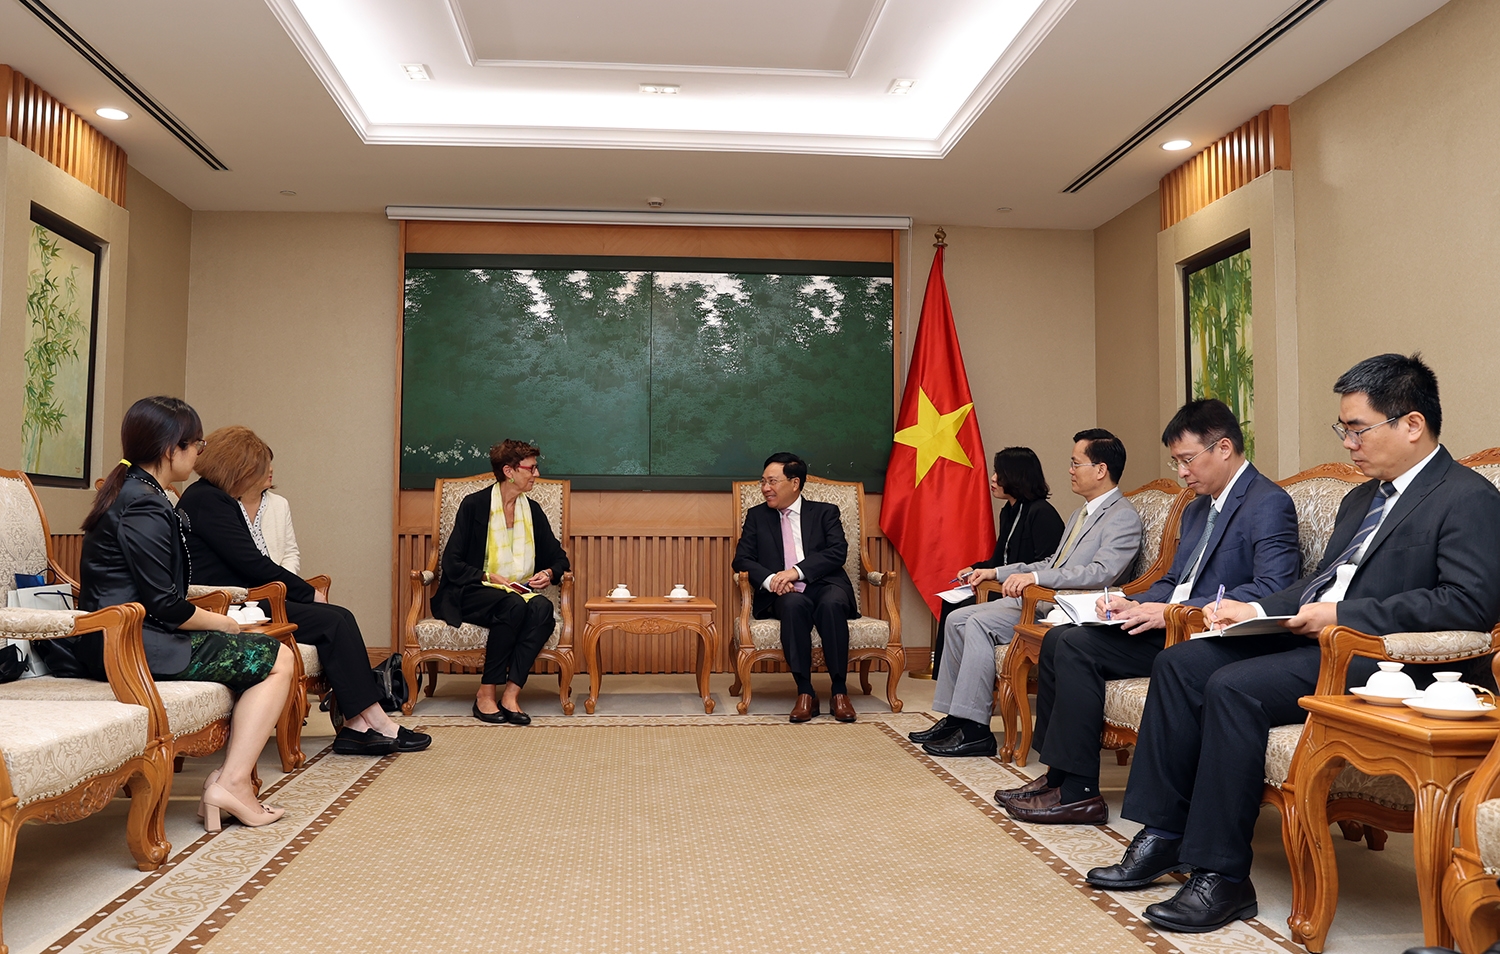 Phó Thủ tướng Thường trực đánh giá cao những đóng góp của Đại sứ Grete Lochen đối với sự phát triển của quan hệ hữu nghị truyền thống và hợp tác nhiều mặt Việt Nam-Na Uy trong nhiệm kỳ công tác tại Việt Nam - Ảnh: VGP/Hải Minh